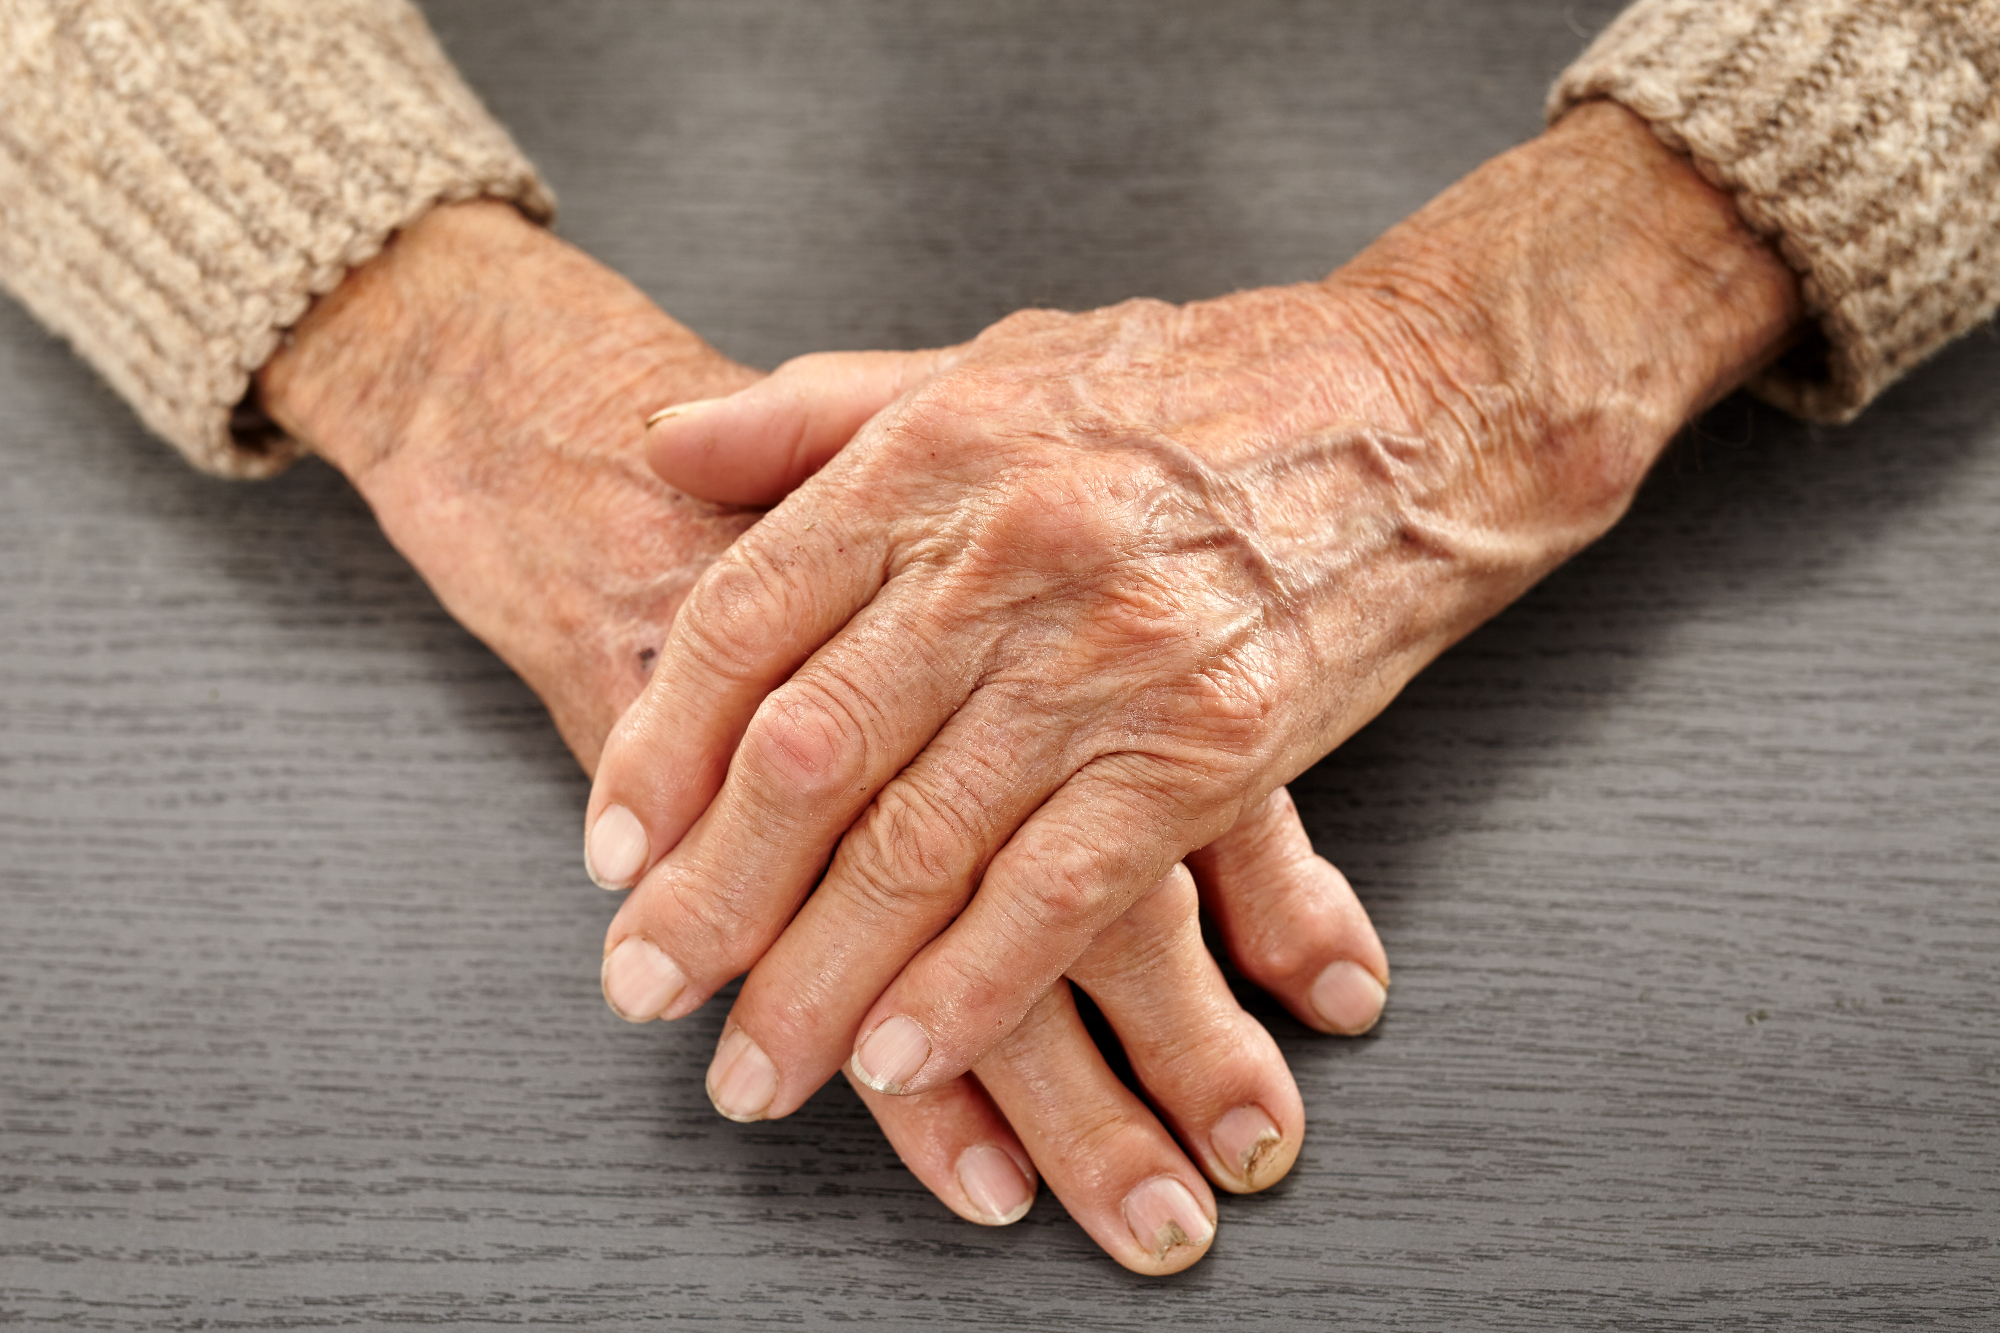 Revmatoidni artritis je lahko kar zahrbtna bolezen